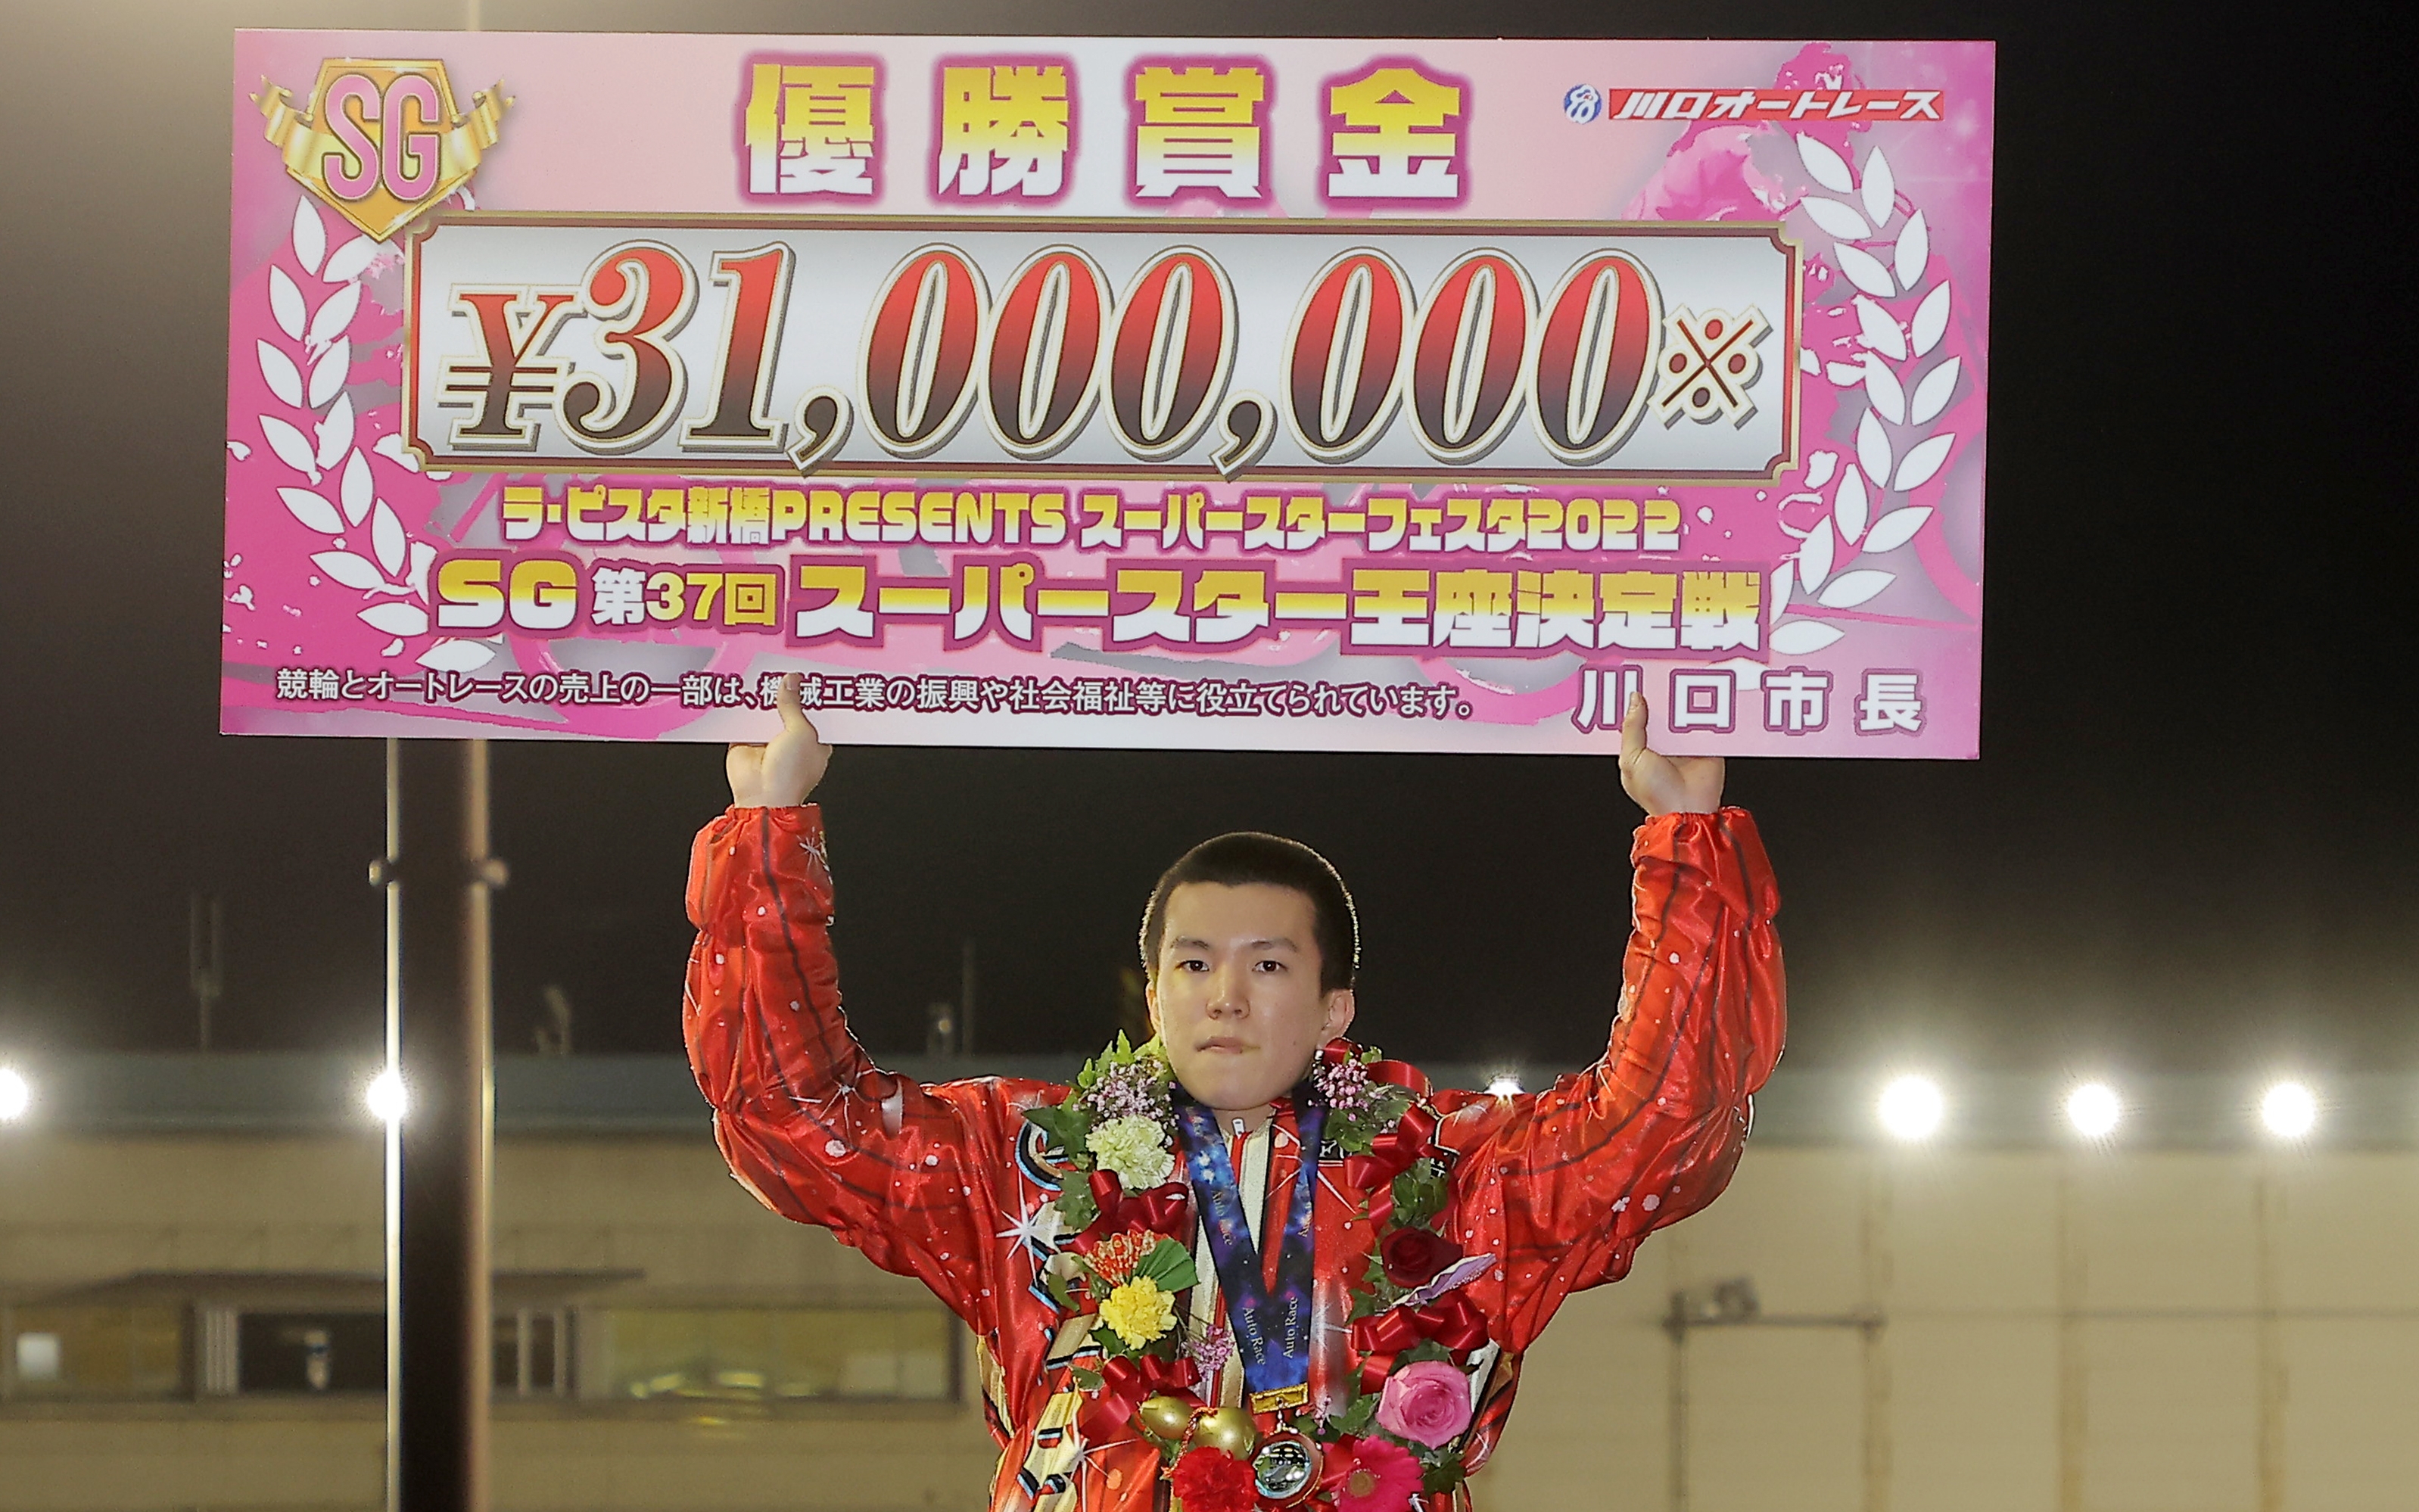 ２０２２年表彰選手発表 最優秀選手賞は鈴木圭一郎 - サンスポZBAT!